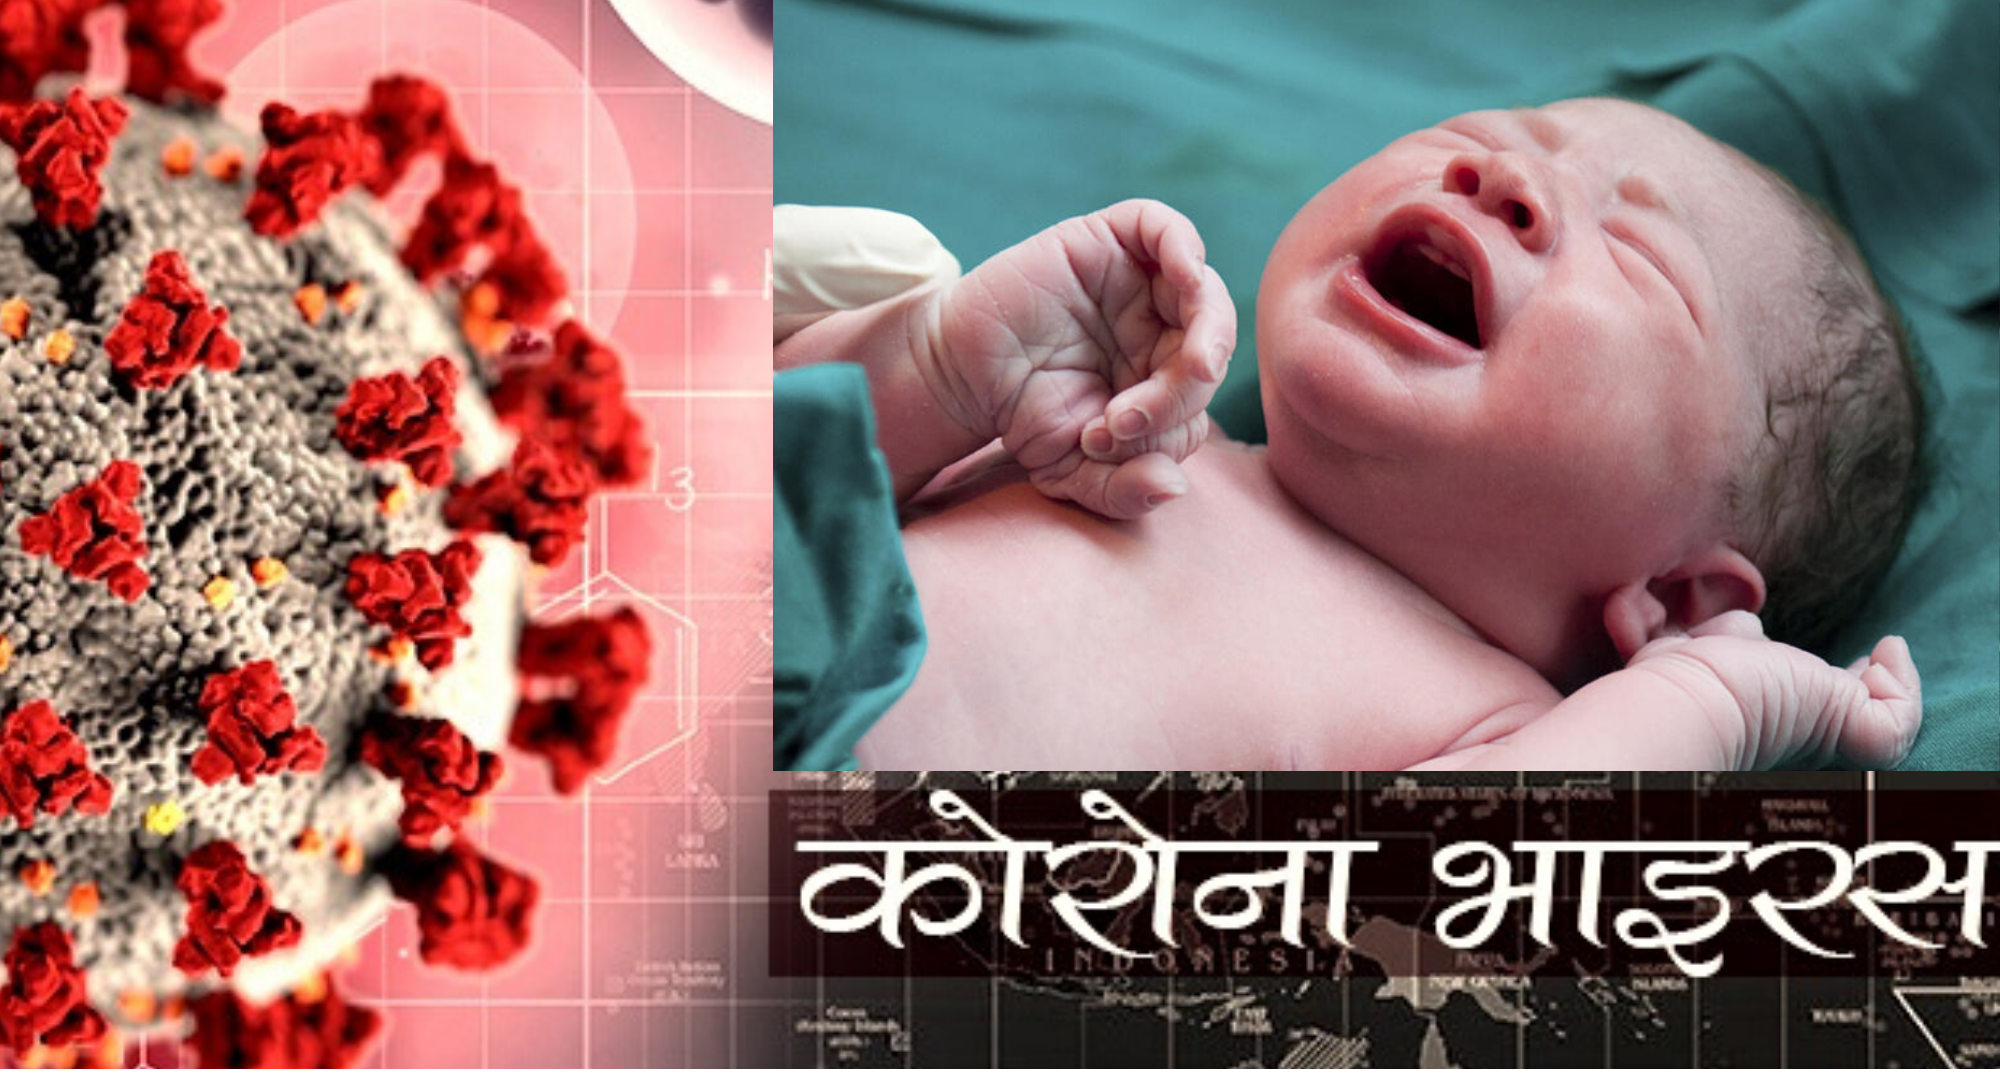 कोरोना संक्रमित महिलाले जन्माइन स्वस्थ शिशु